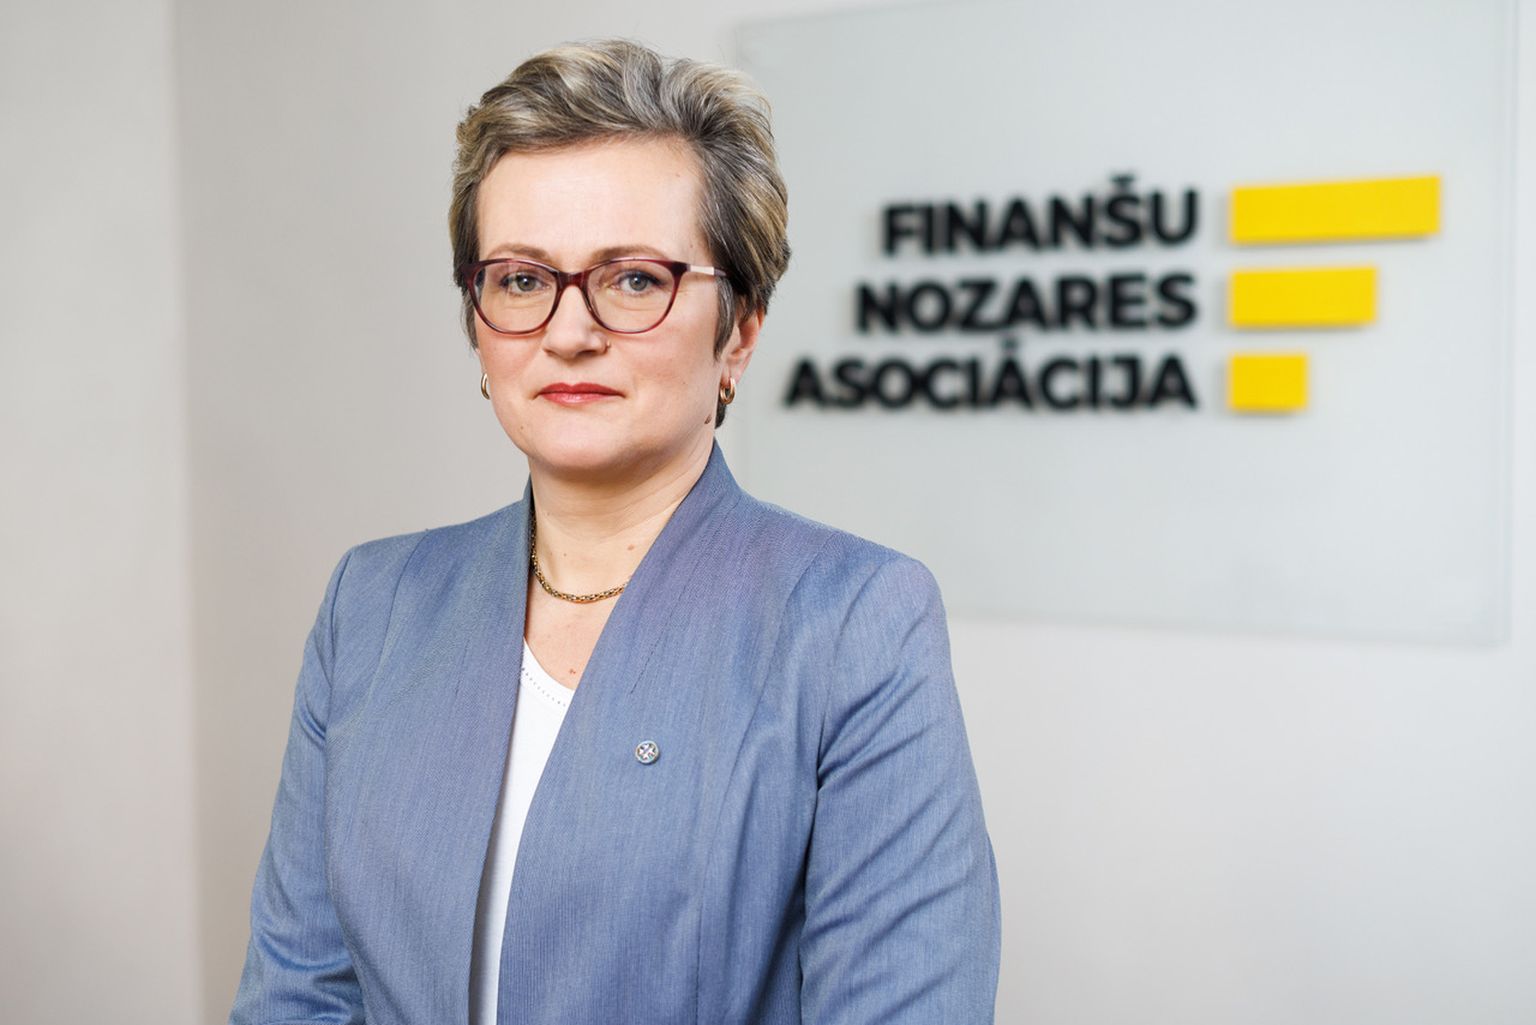 Finanšu nozares asociācijas valdes priekšsēdētāja Sanita Bajāre.